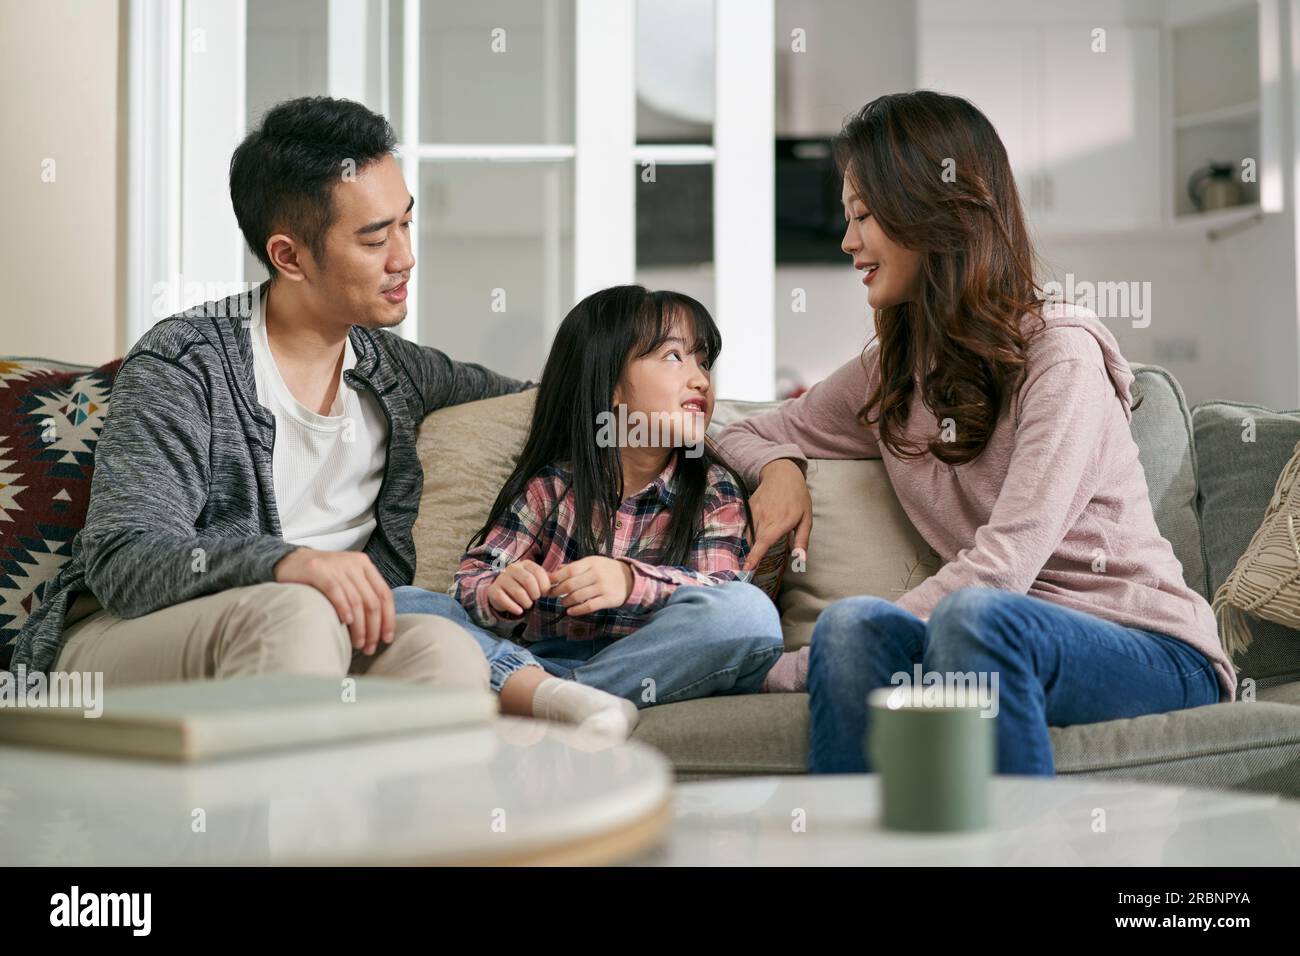 Junge asiatische Mutter und Vater, die zu Hause auf dem Familientisch sitzen und ein angenehmes Gespräch mit ihrer Tochter führen Stockfoto